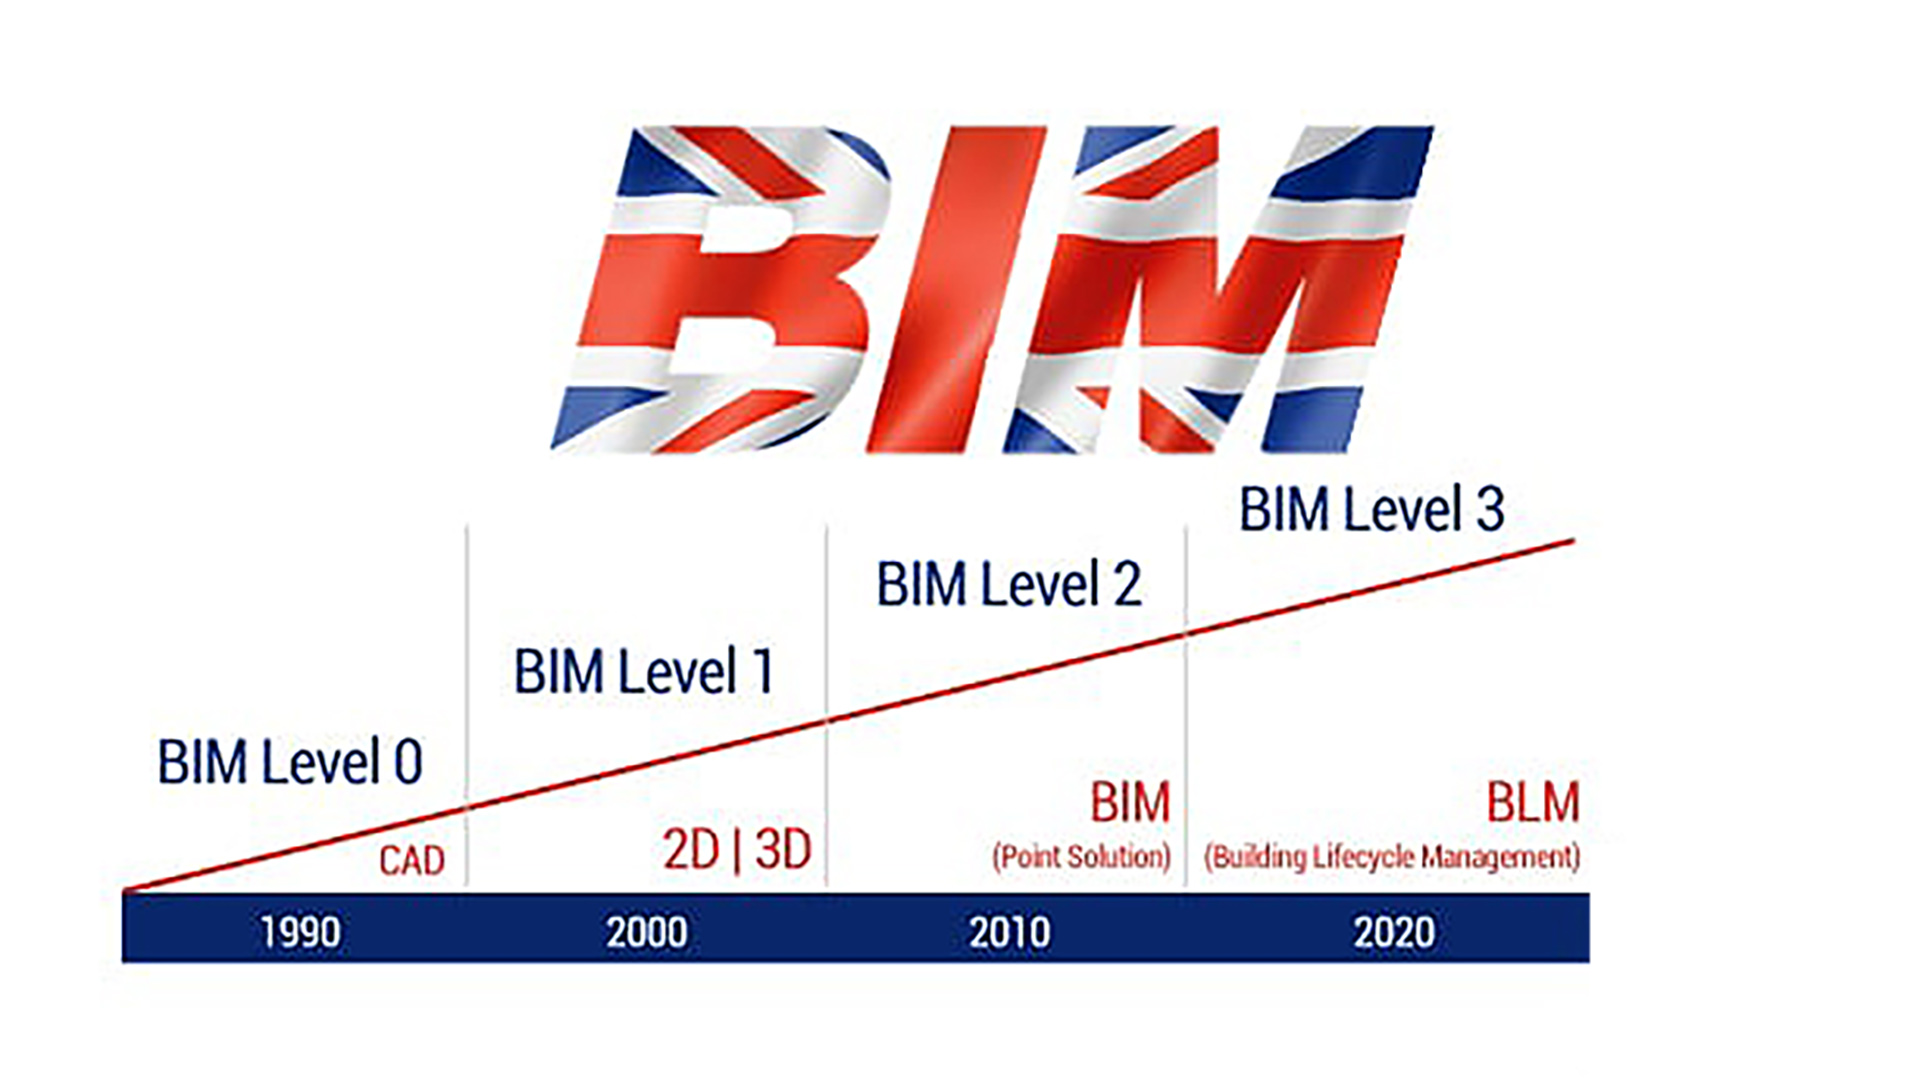 Implantación BIM en el mundo: 1- Reino Unido